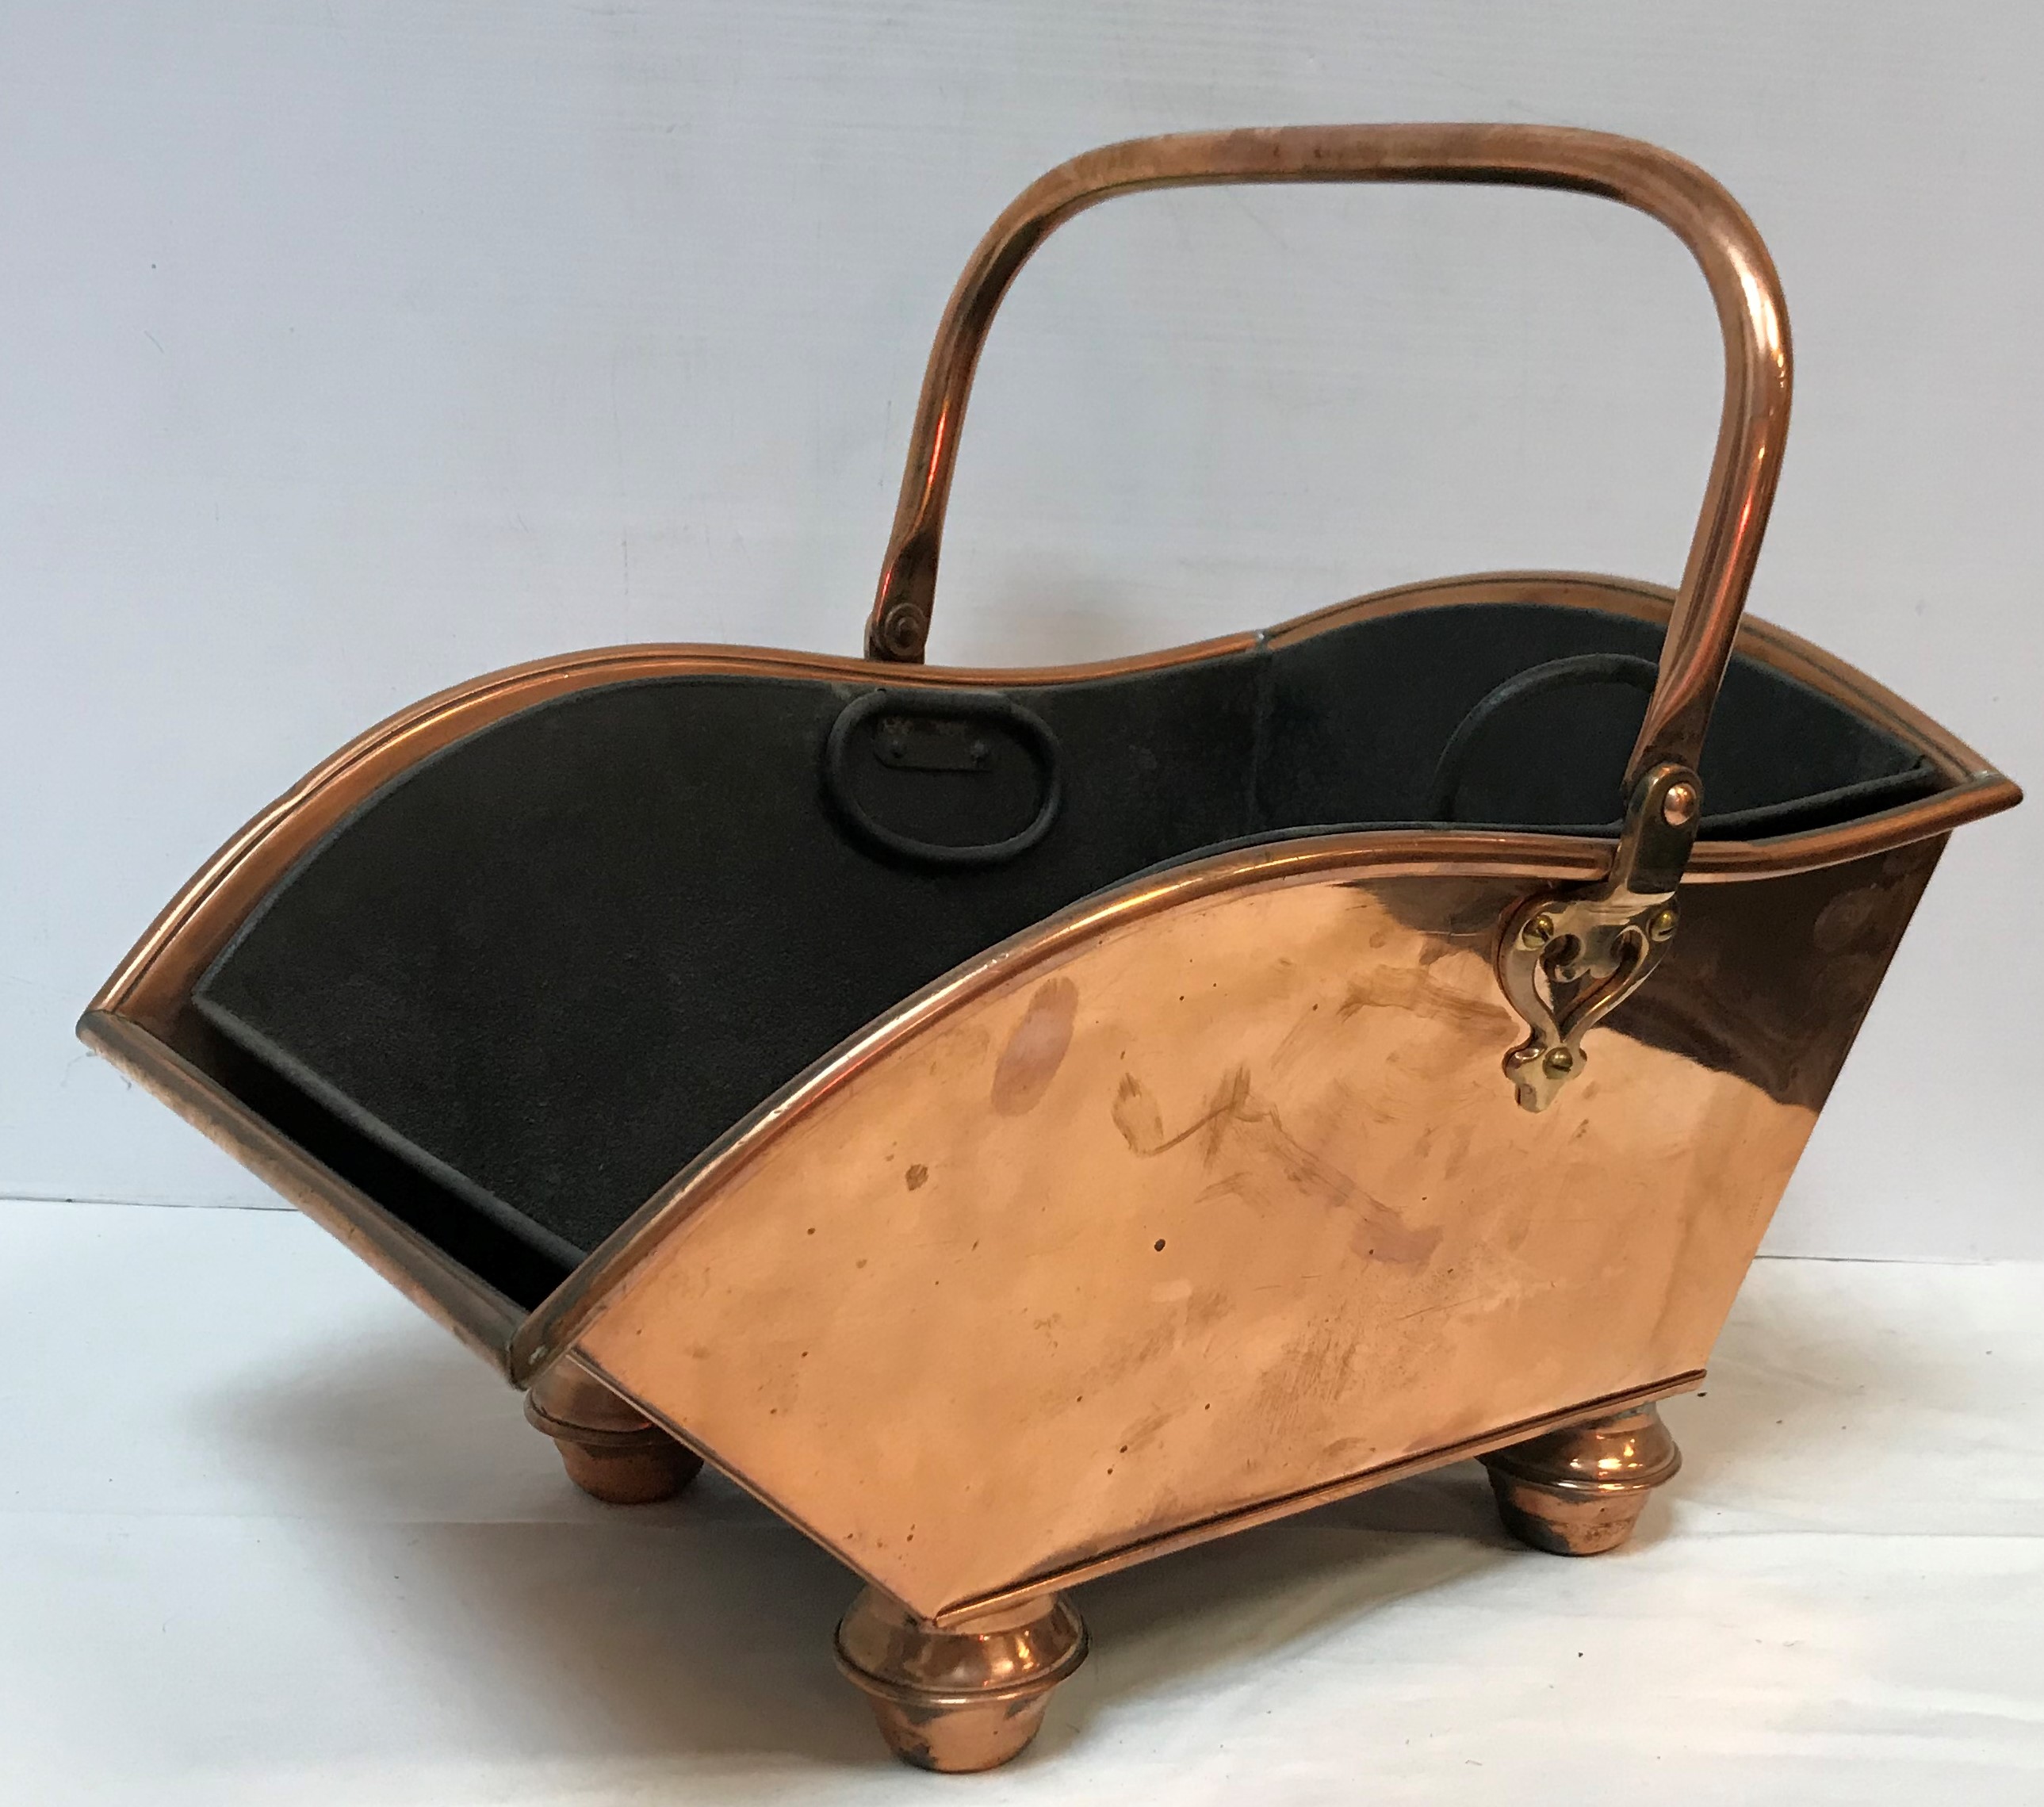 A Victorian copper coal scuttle with swi